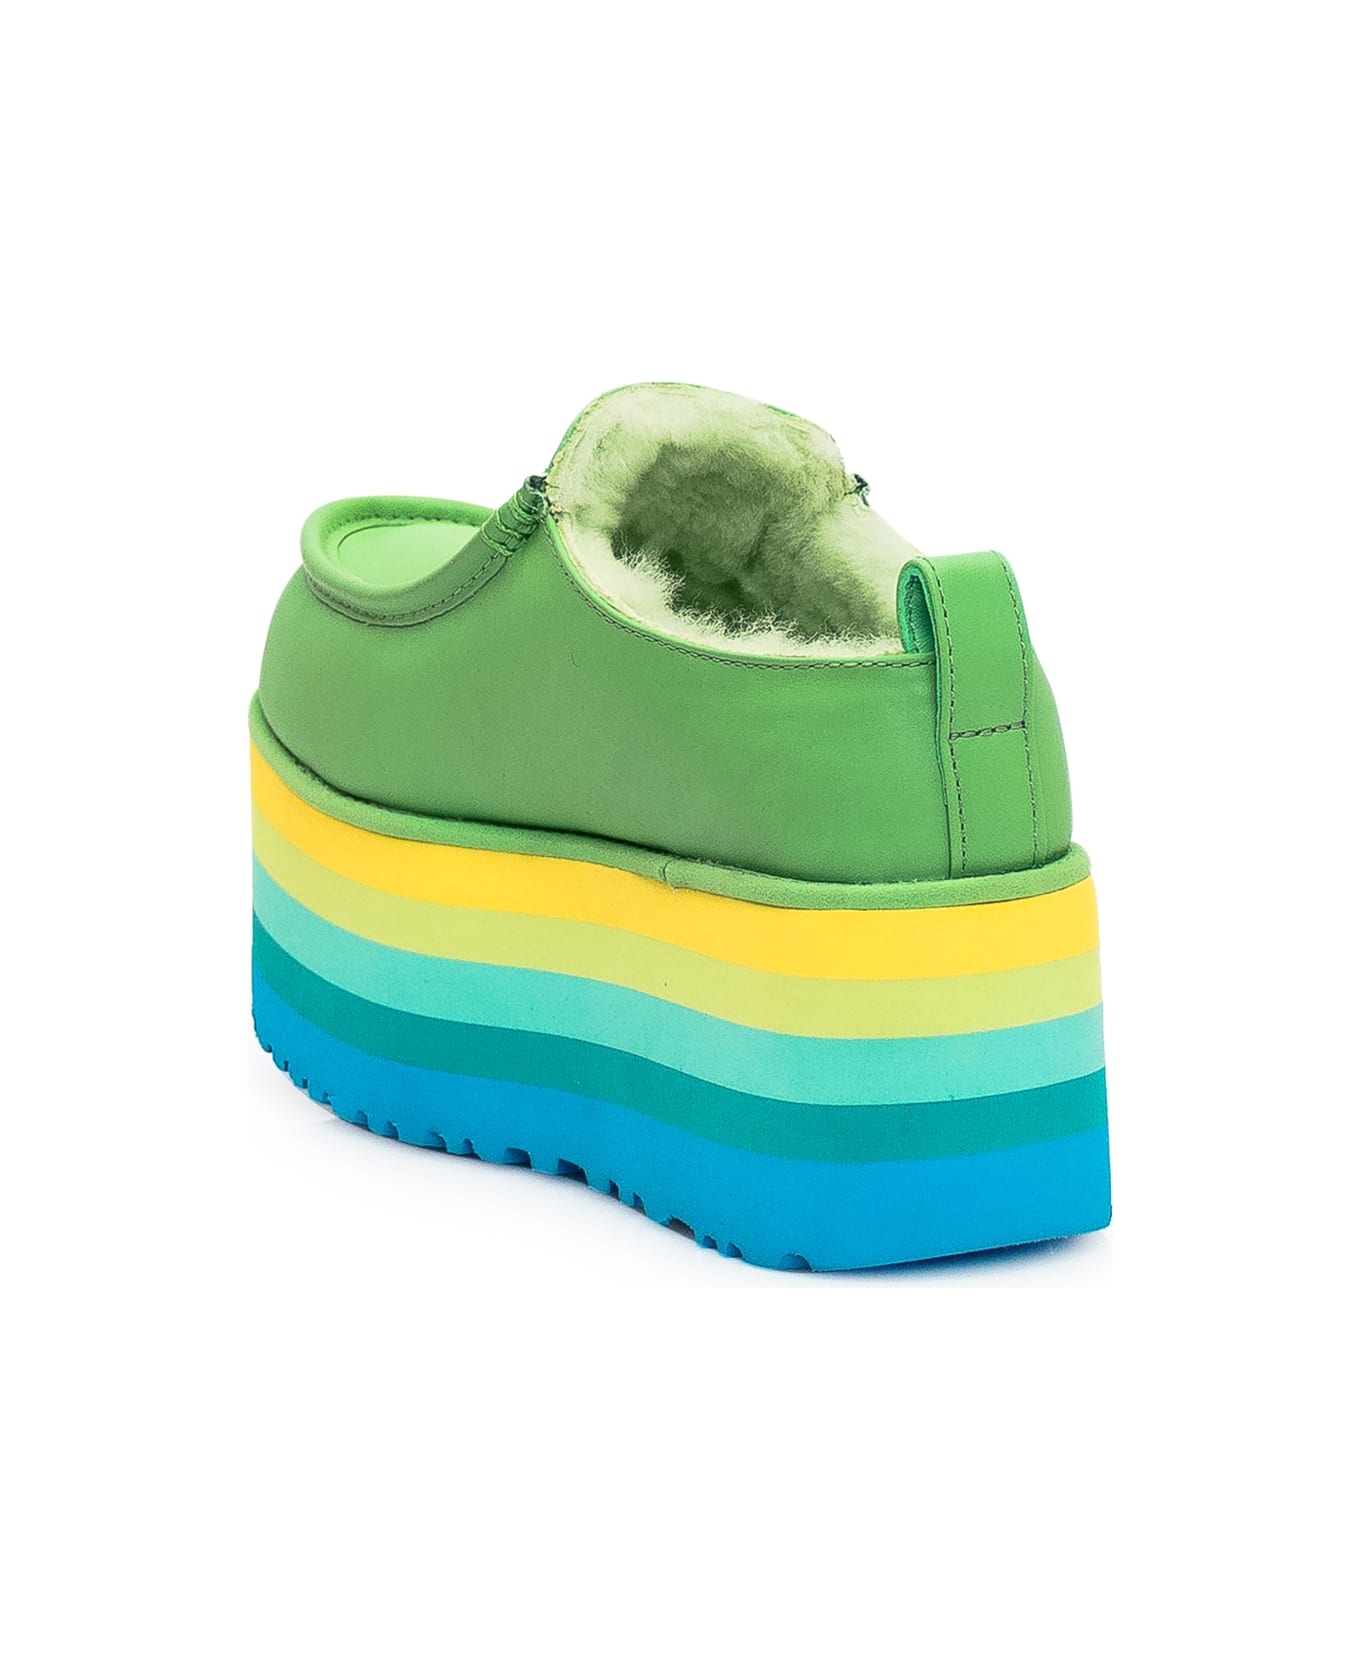 UGG Sandal With Platform - GREEN MULTI